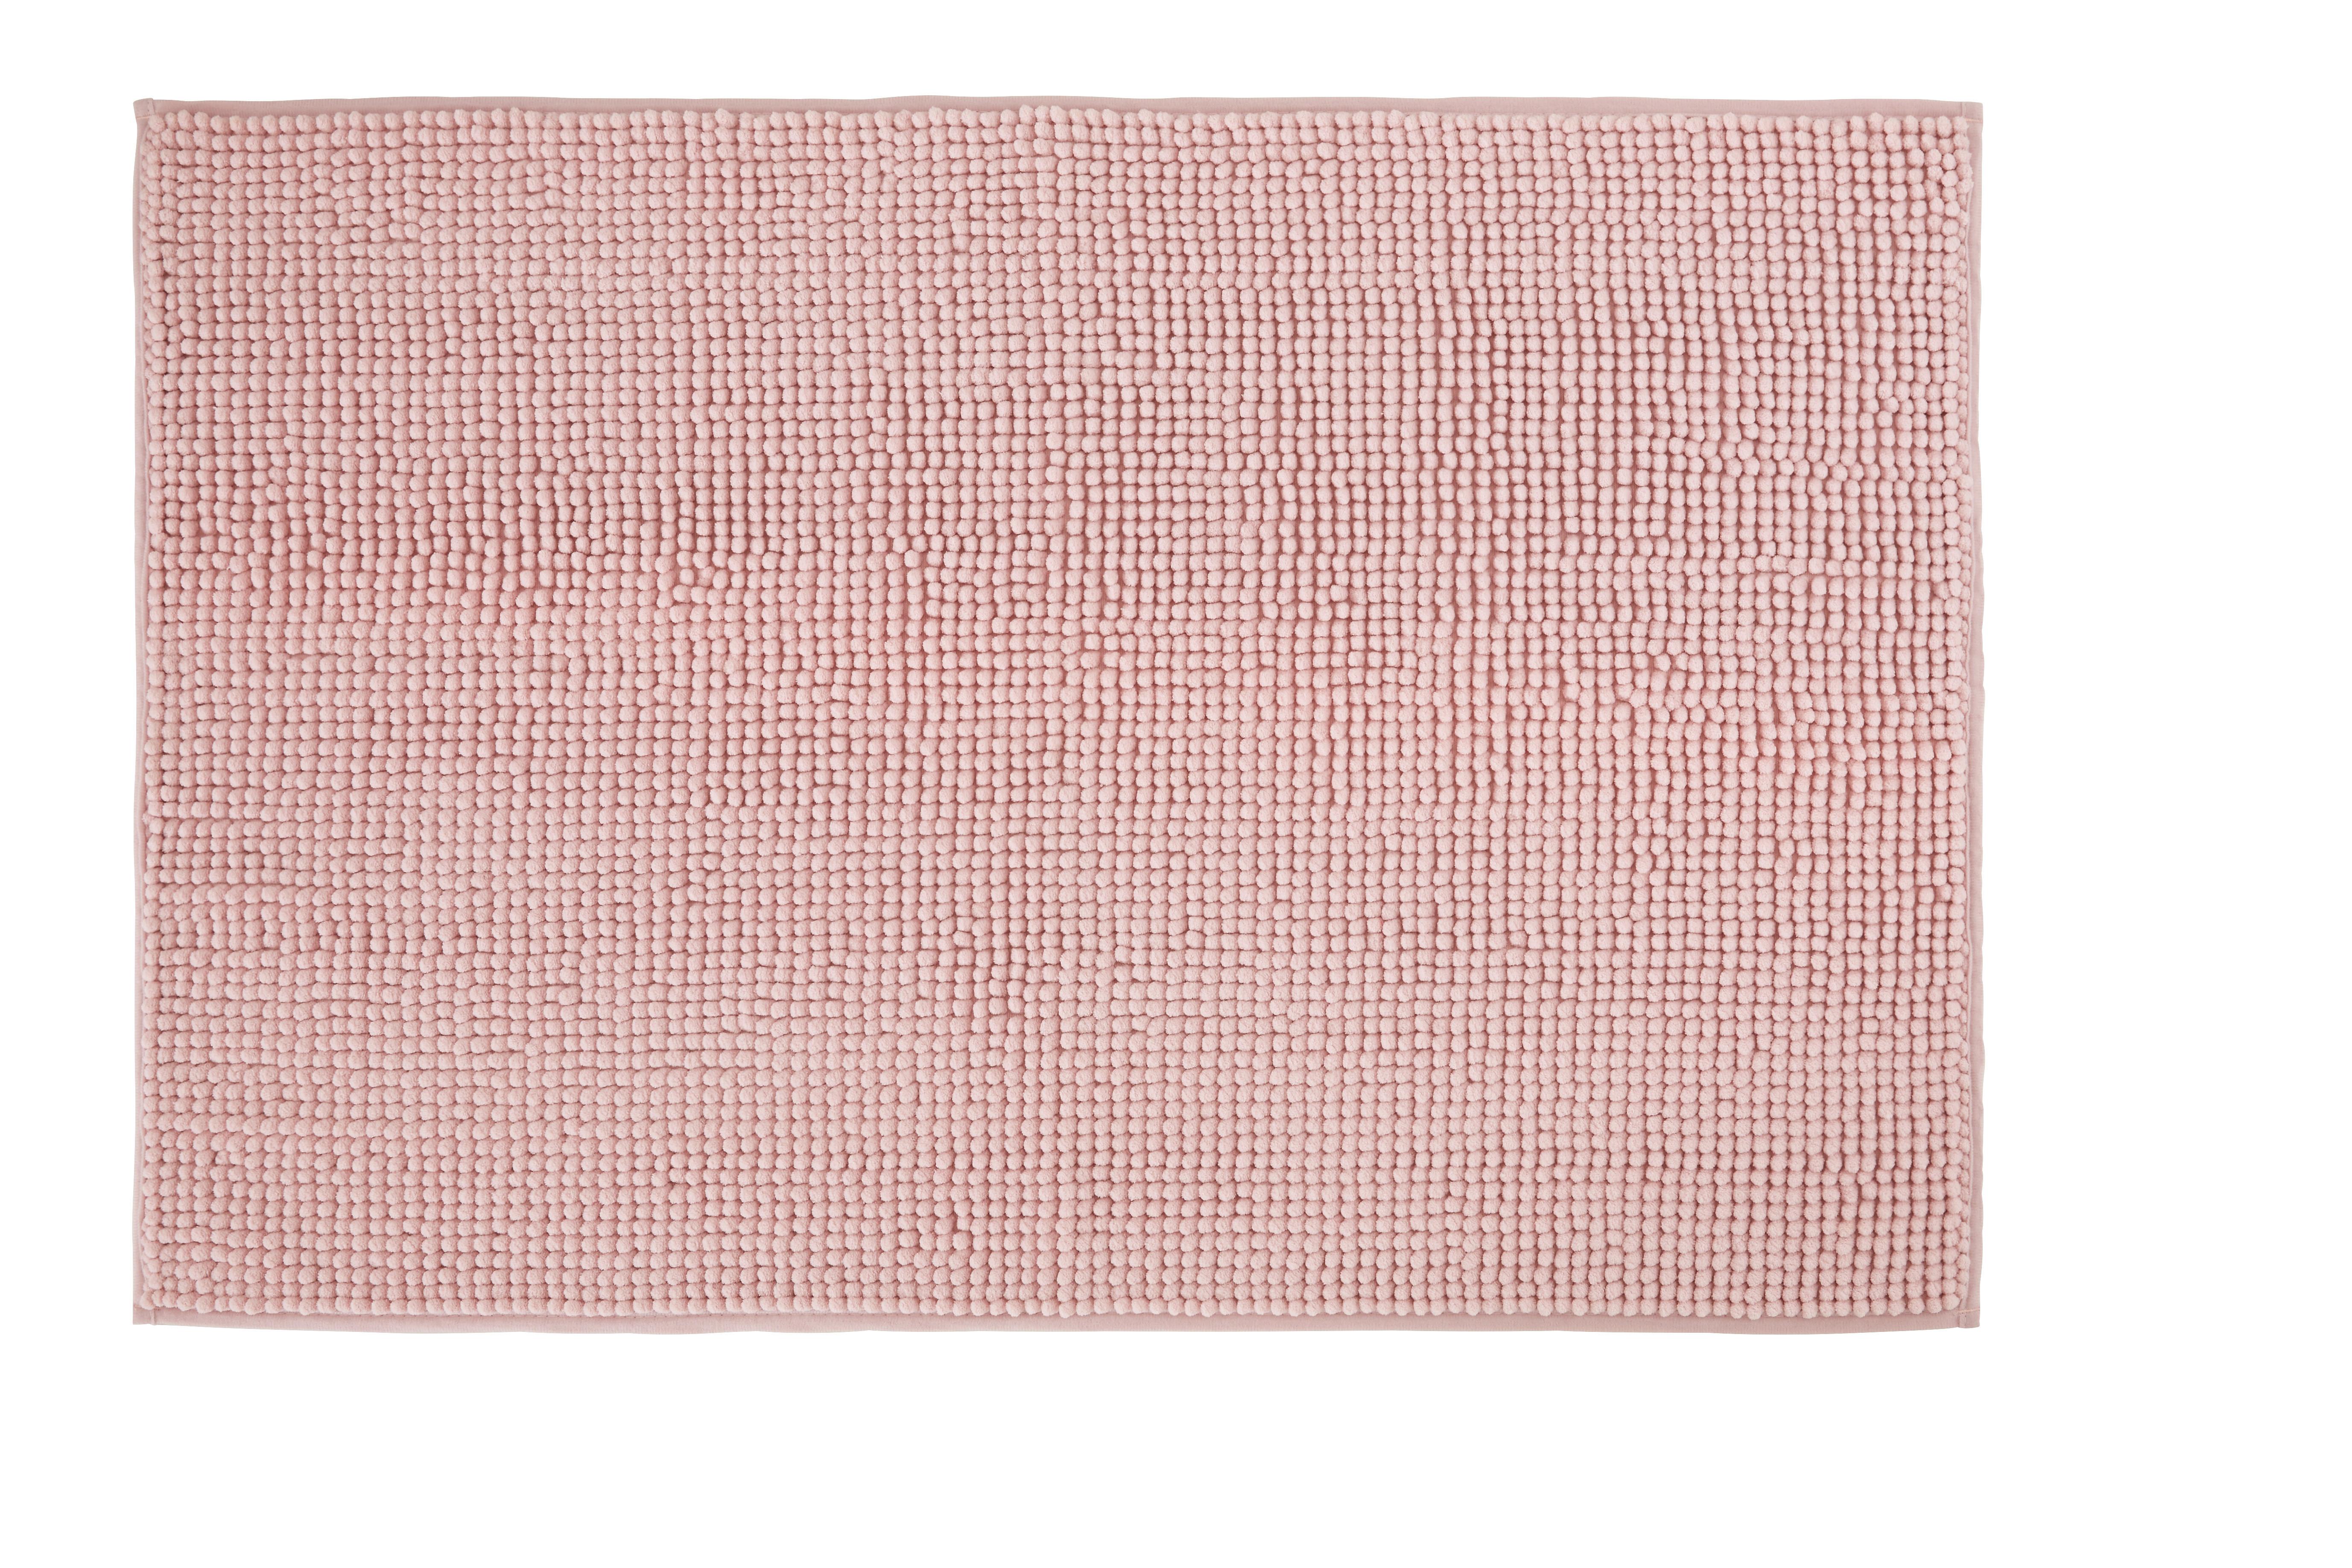 Předložka Koupelnová Nelly, 60/90cm, Růžová - růžová, textil (60/90cm) - Modern Living